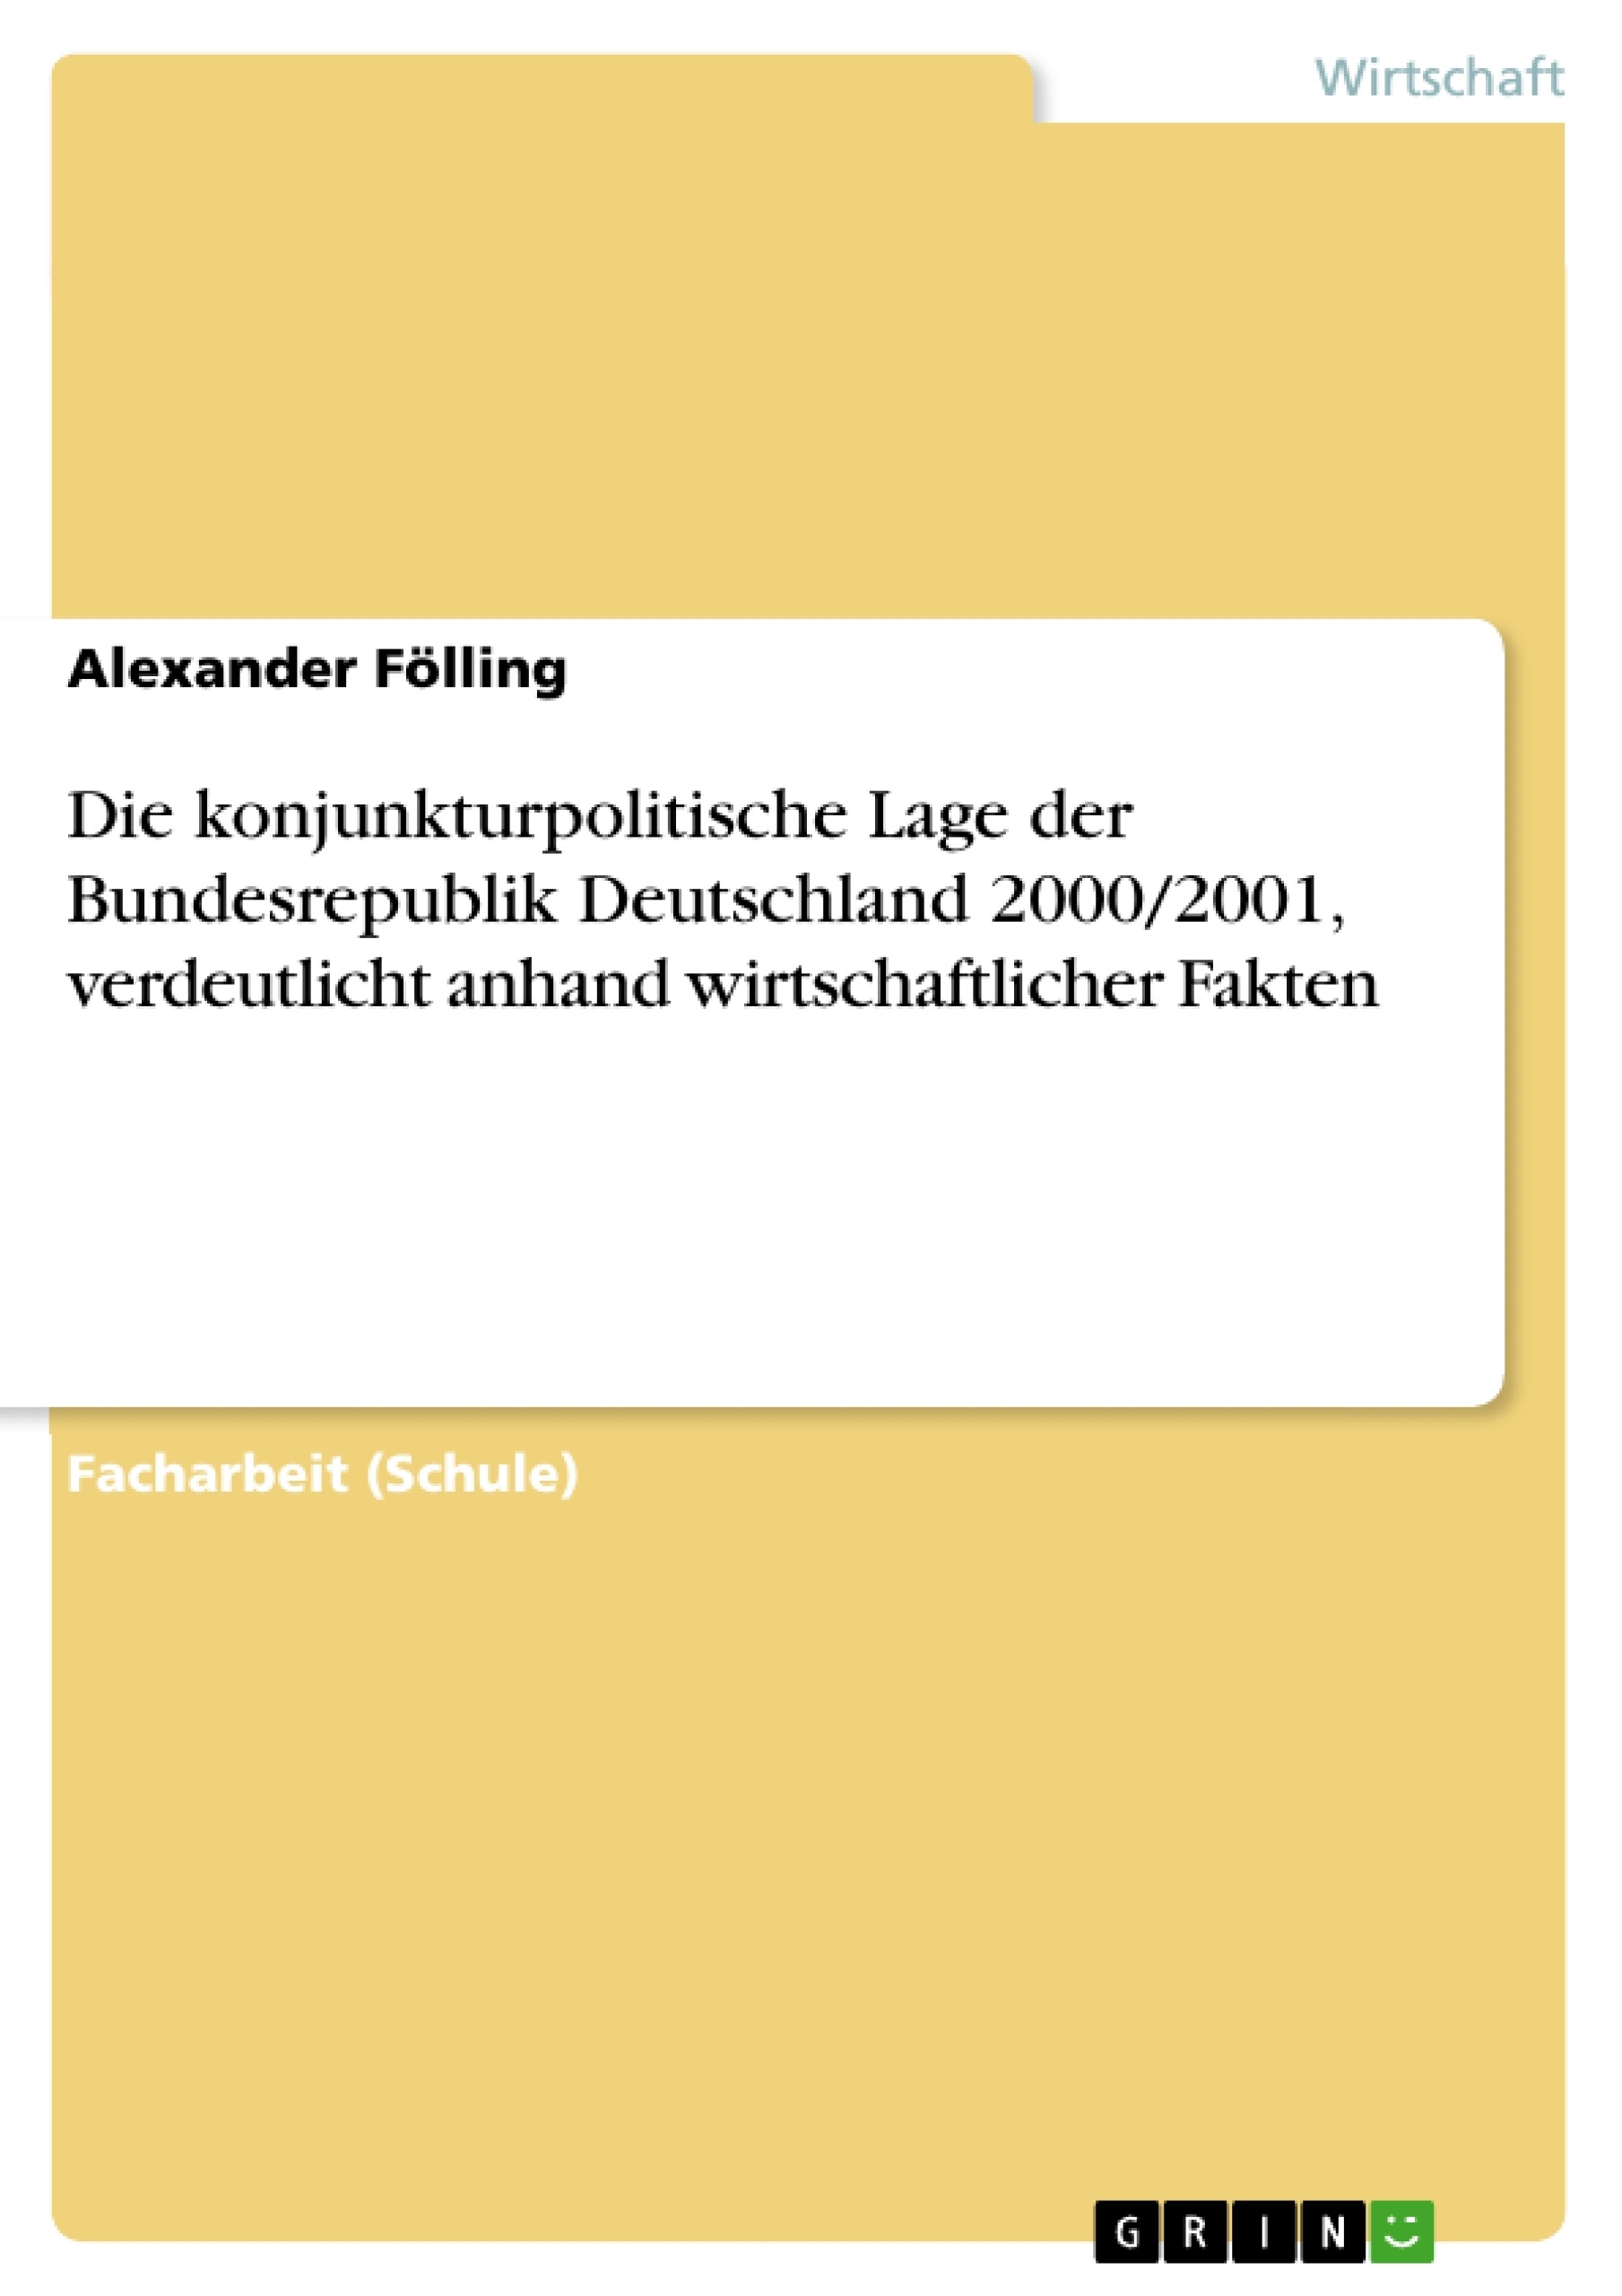 Title: Die konjunkturpolitische Lage der Bundesrepublik Deutschland 2000/2001, verdeutlicht anhand wirtschaftlicher Fakten